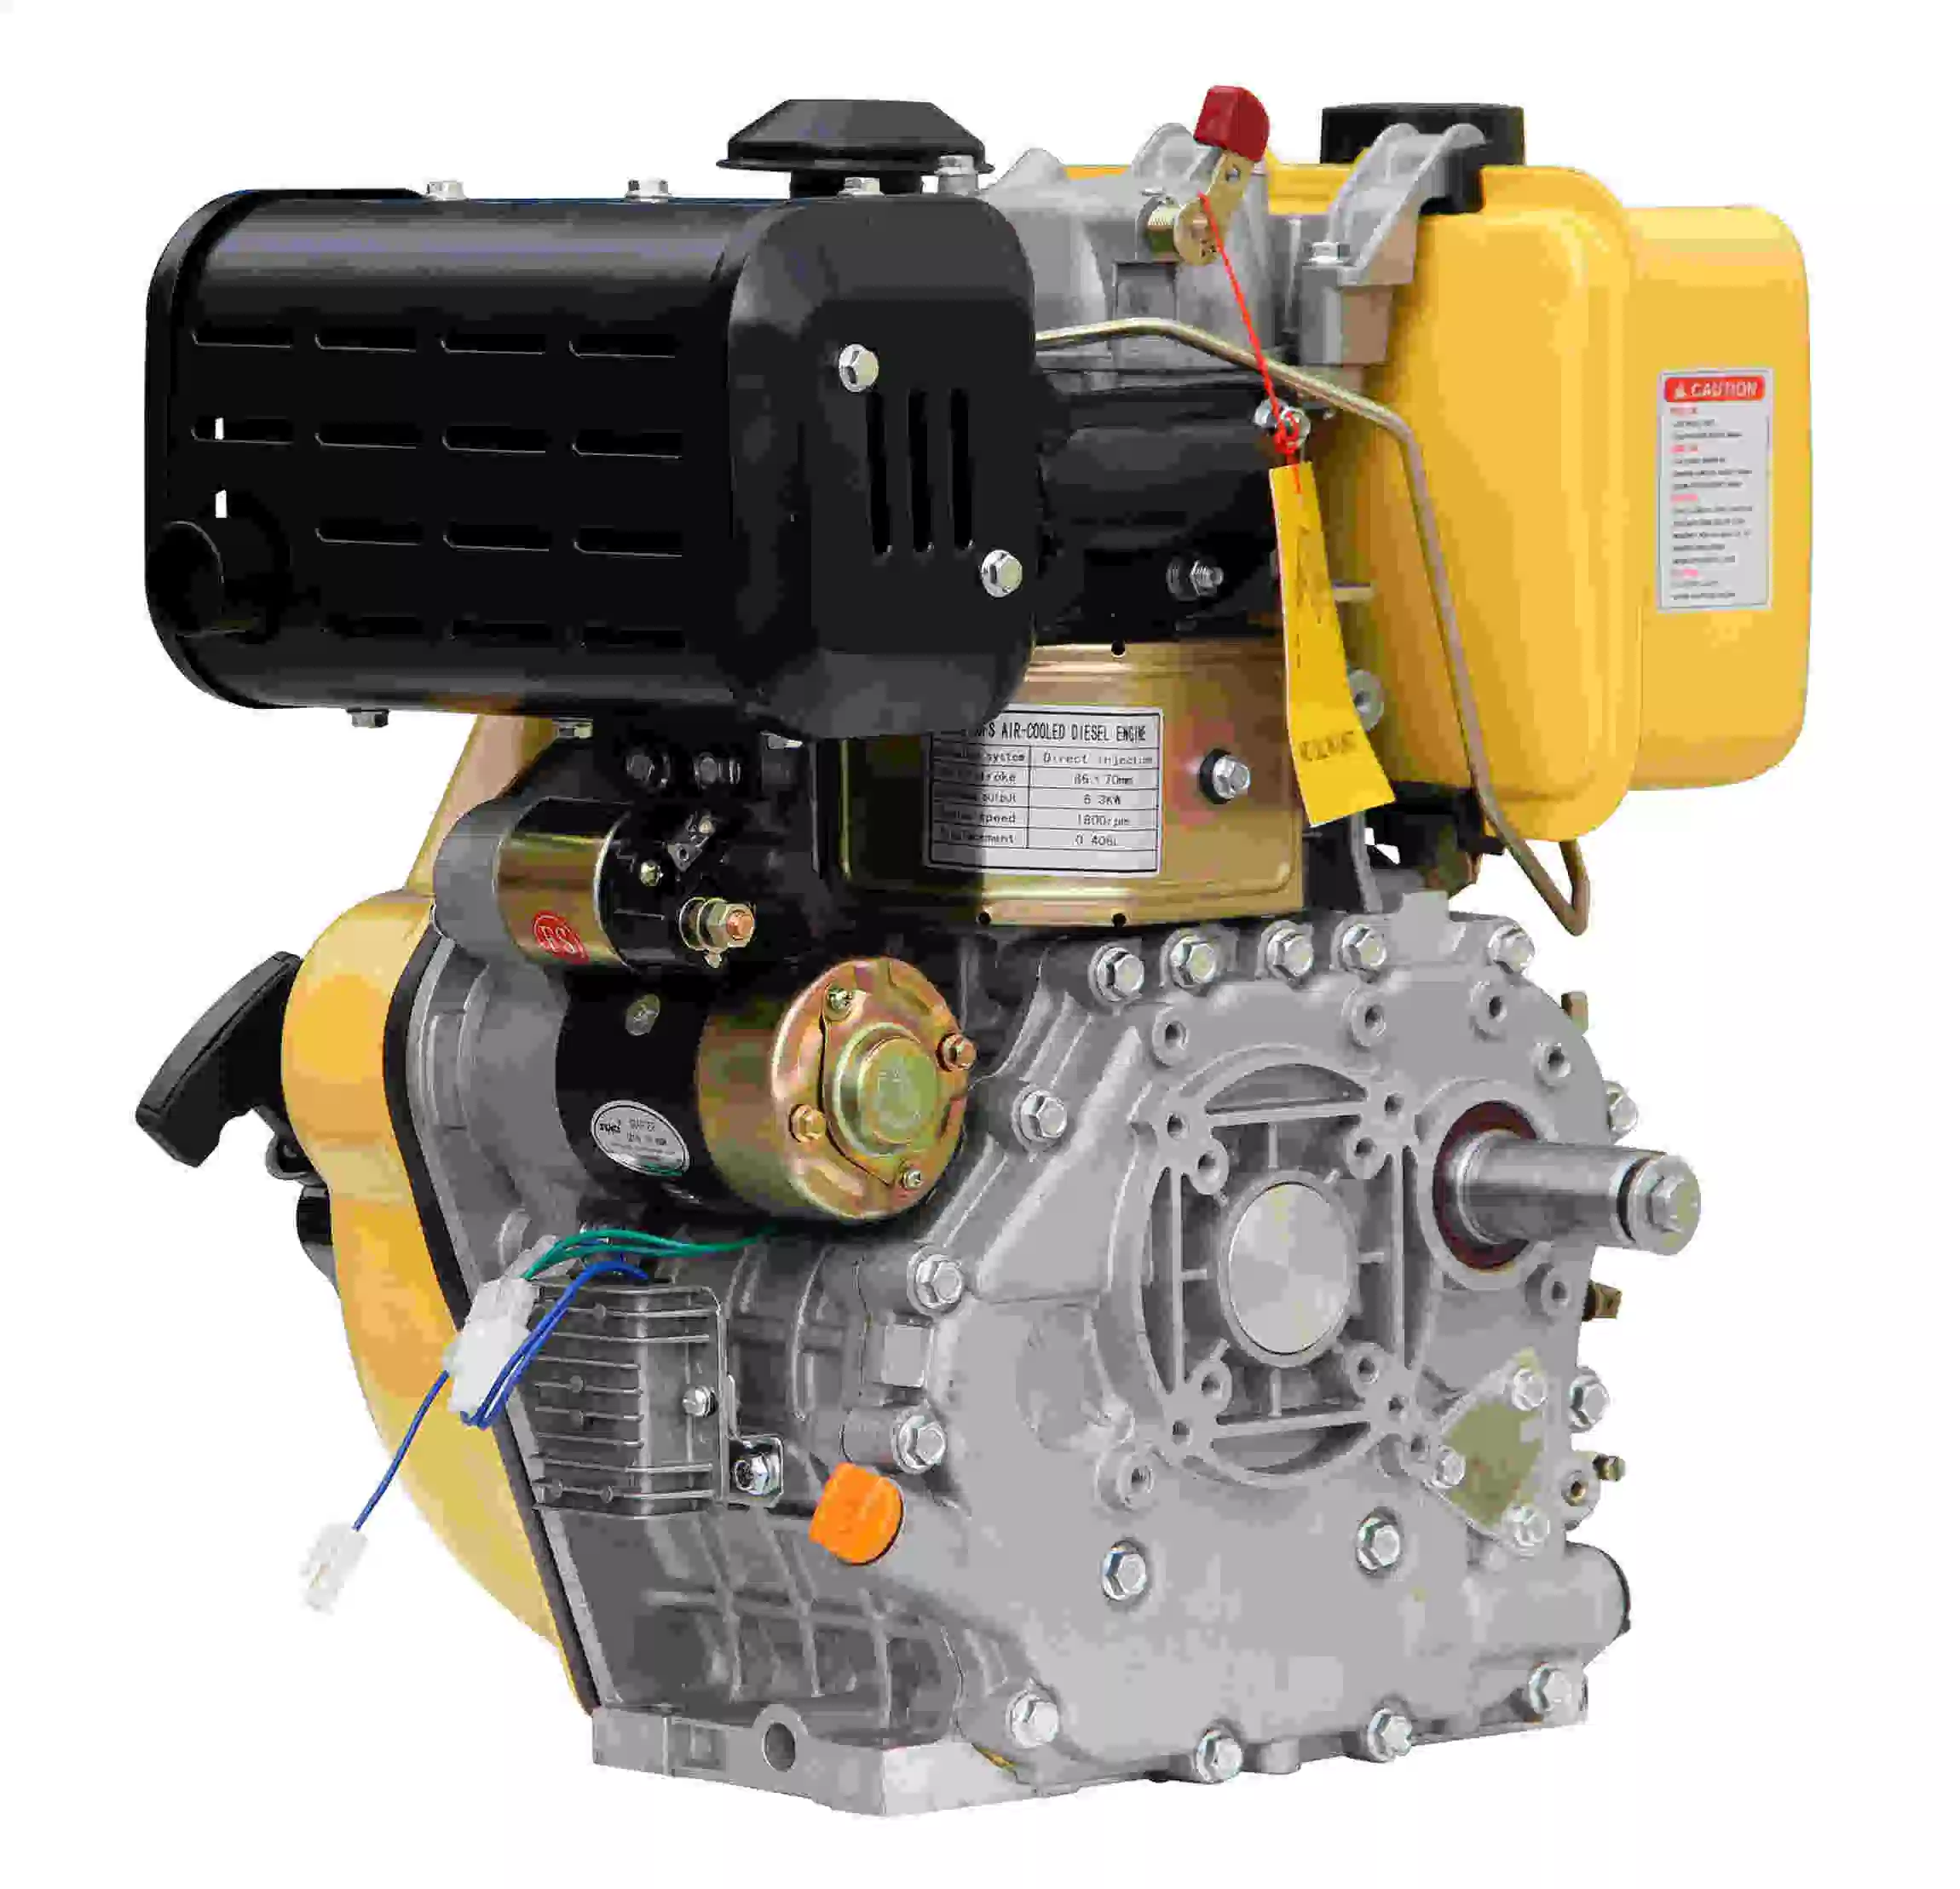 Power Value 10 HP Water Pump Diesel Engine, Generator Diesel Fuel Engine